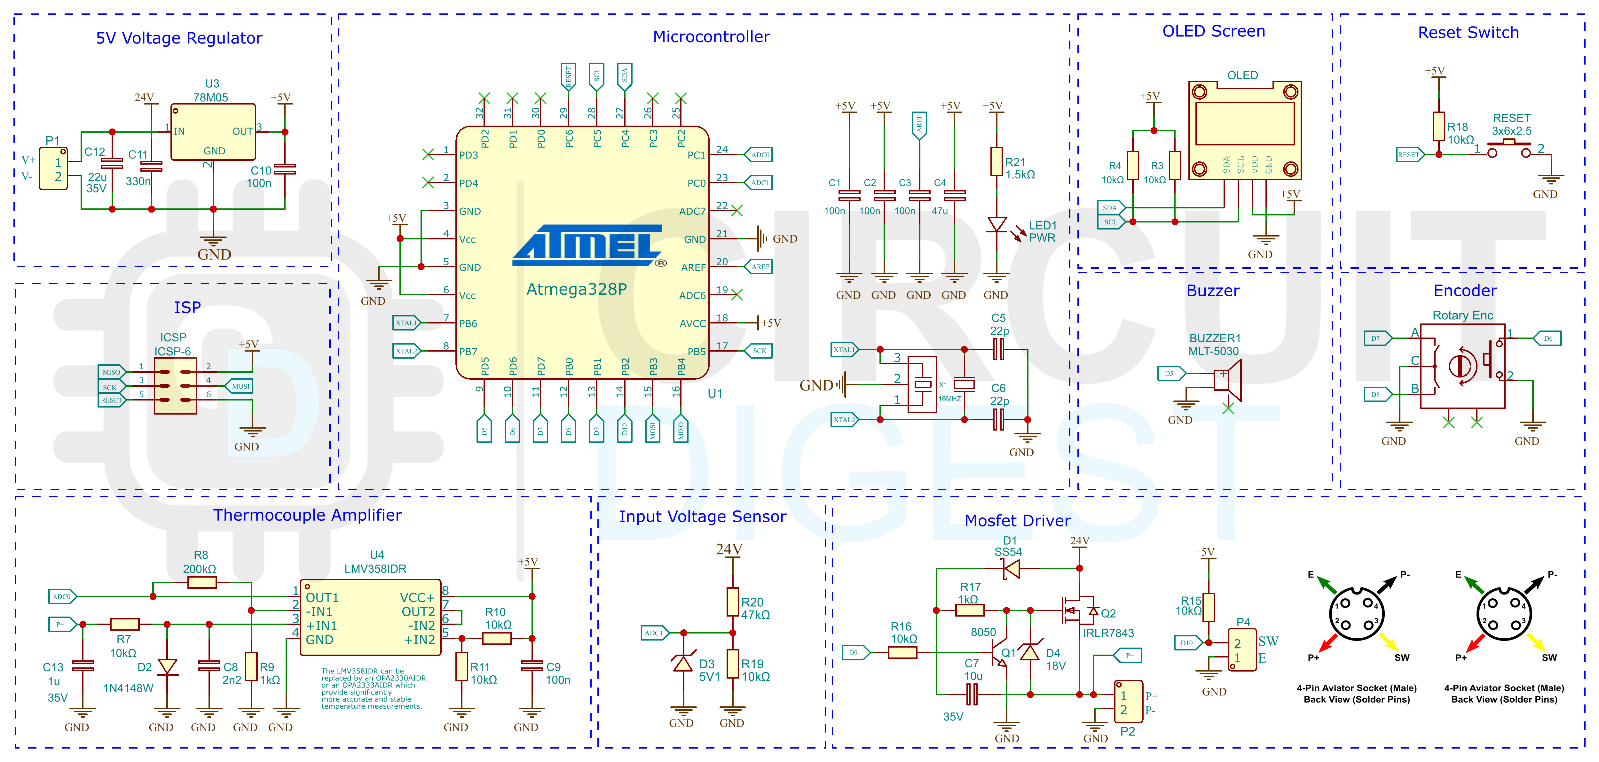 Soldering Iron Controller Circuit Diagram